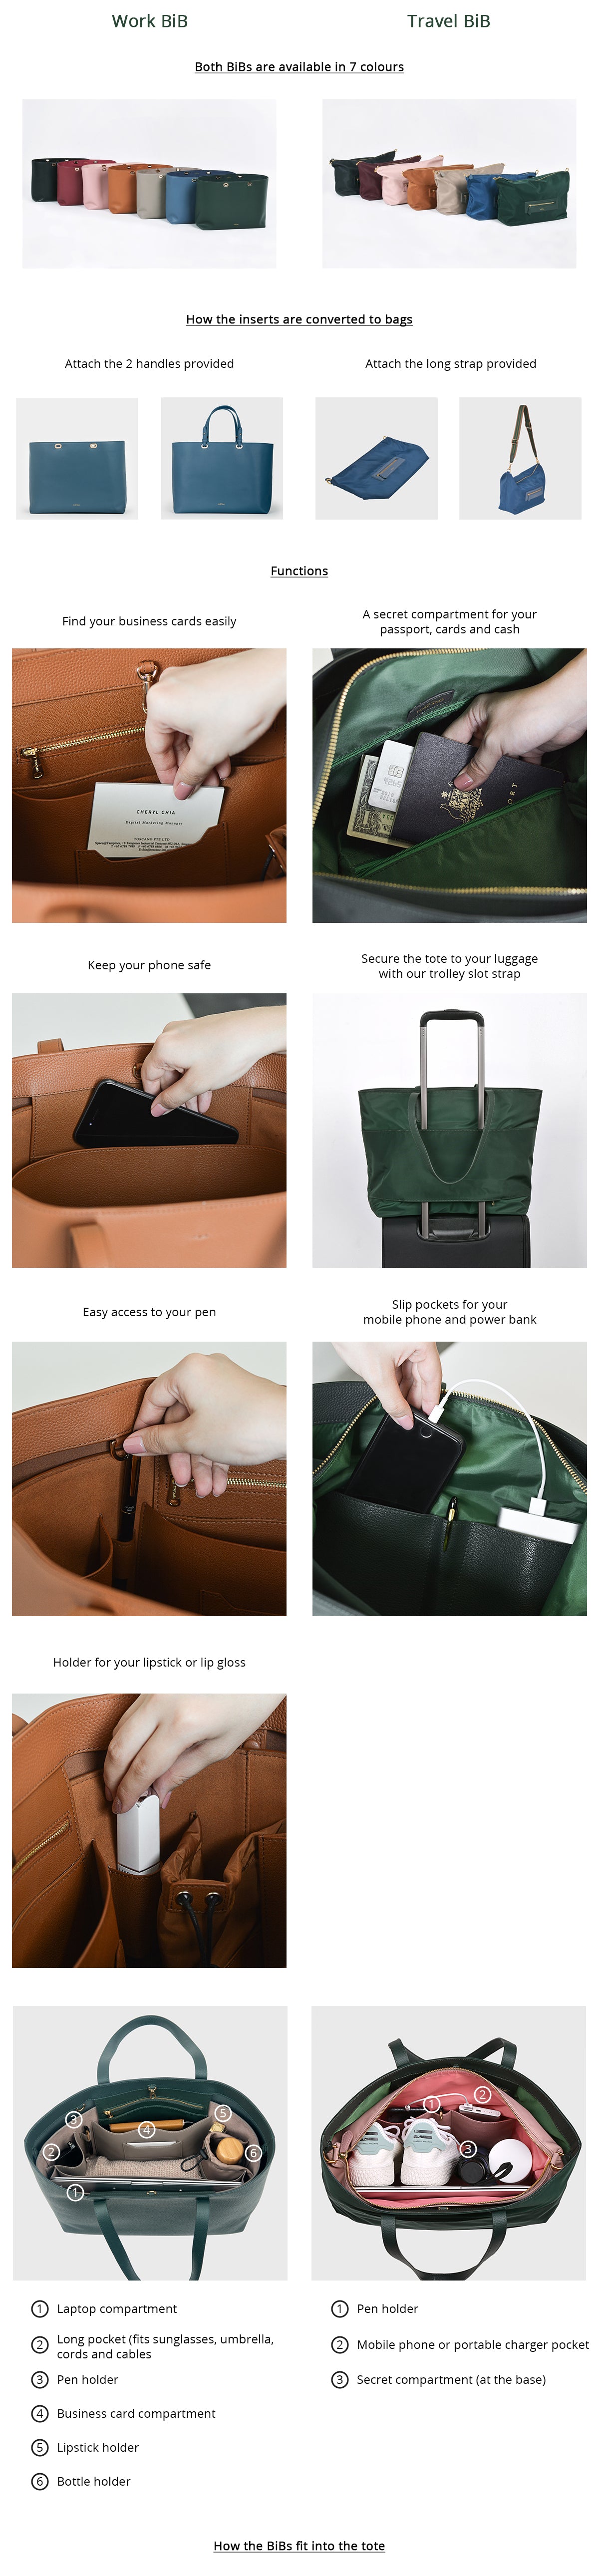 Bag-in-a-box (BiB) - Diffpack